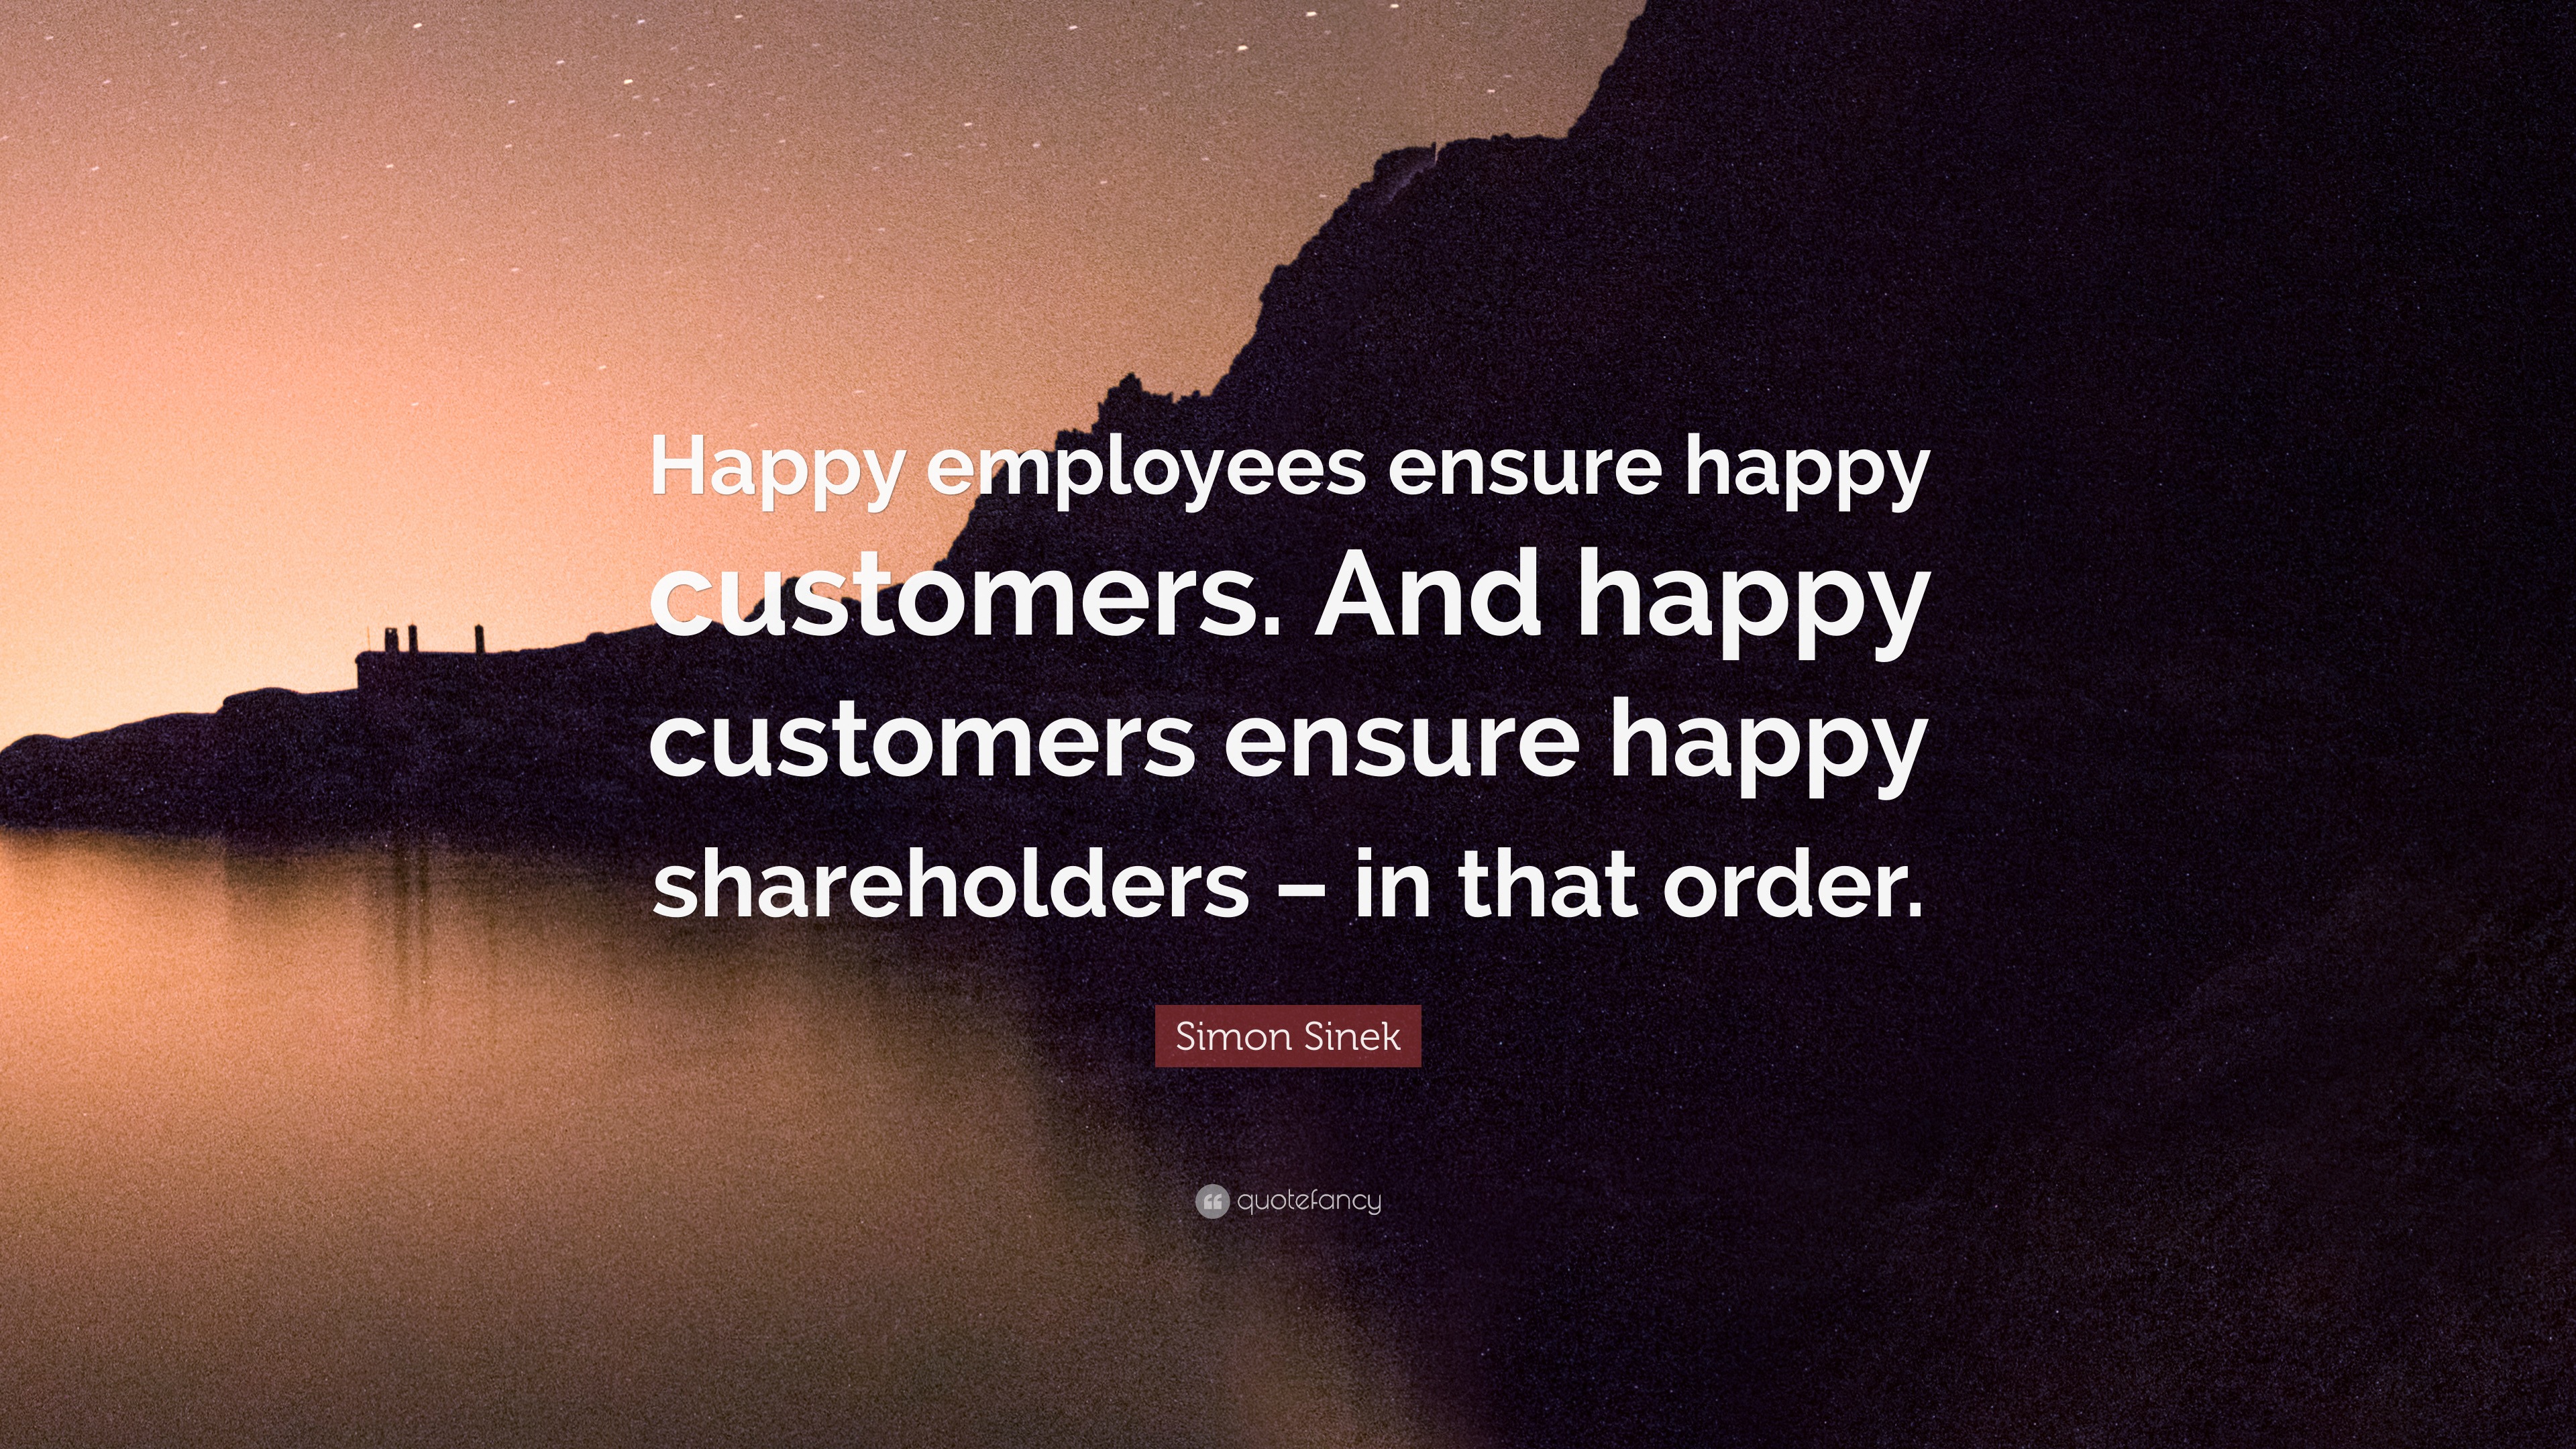 Simon Sinek Quote: “Happy employees ensure happy customers. And happy